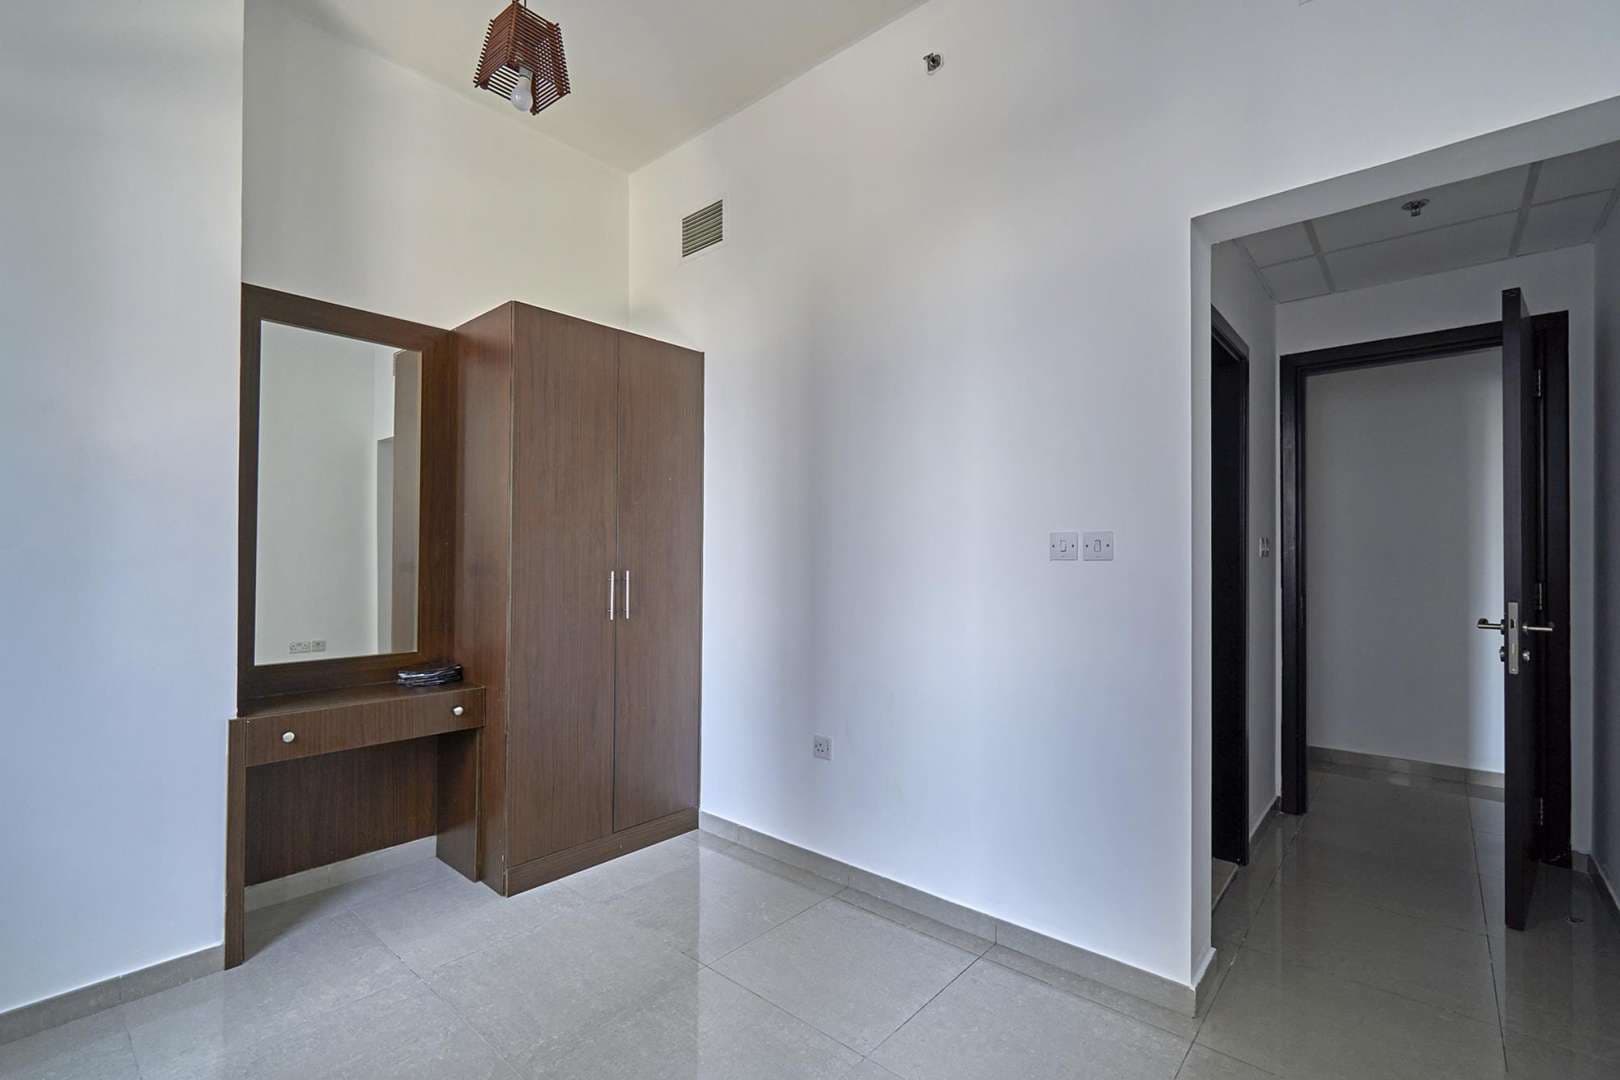 2 Bedroom Apartment For Rent Marina Wharf Lp05998 B51c8ba46b53a0.jpg